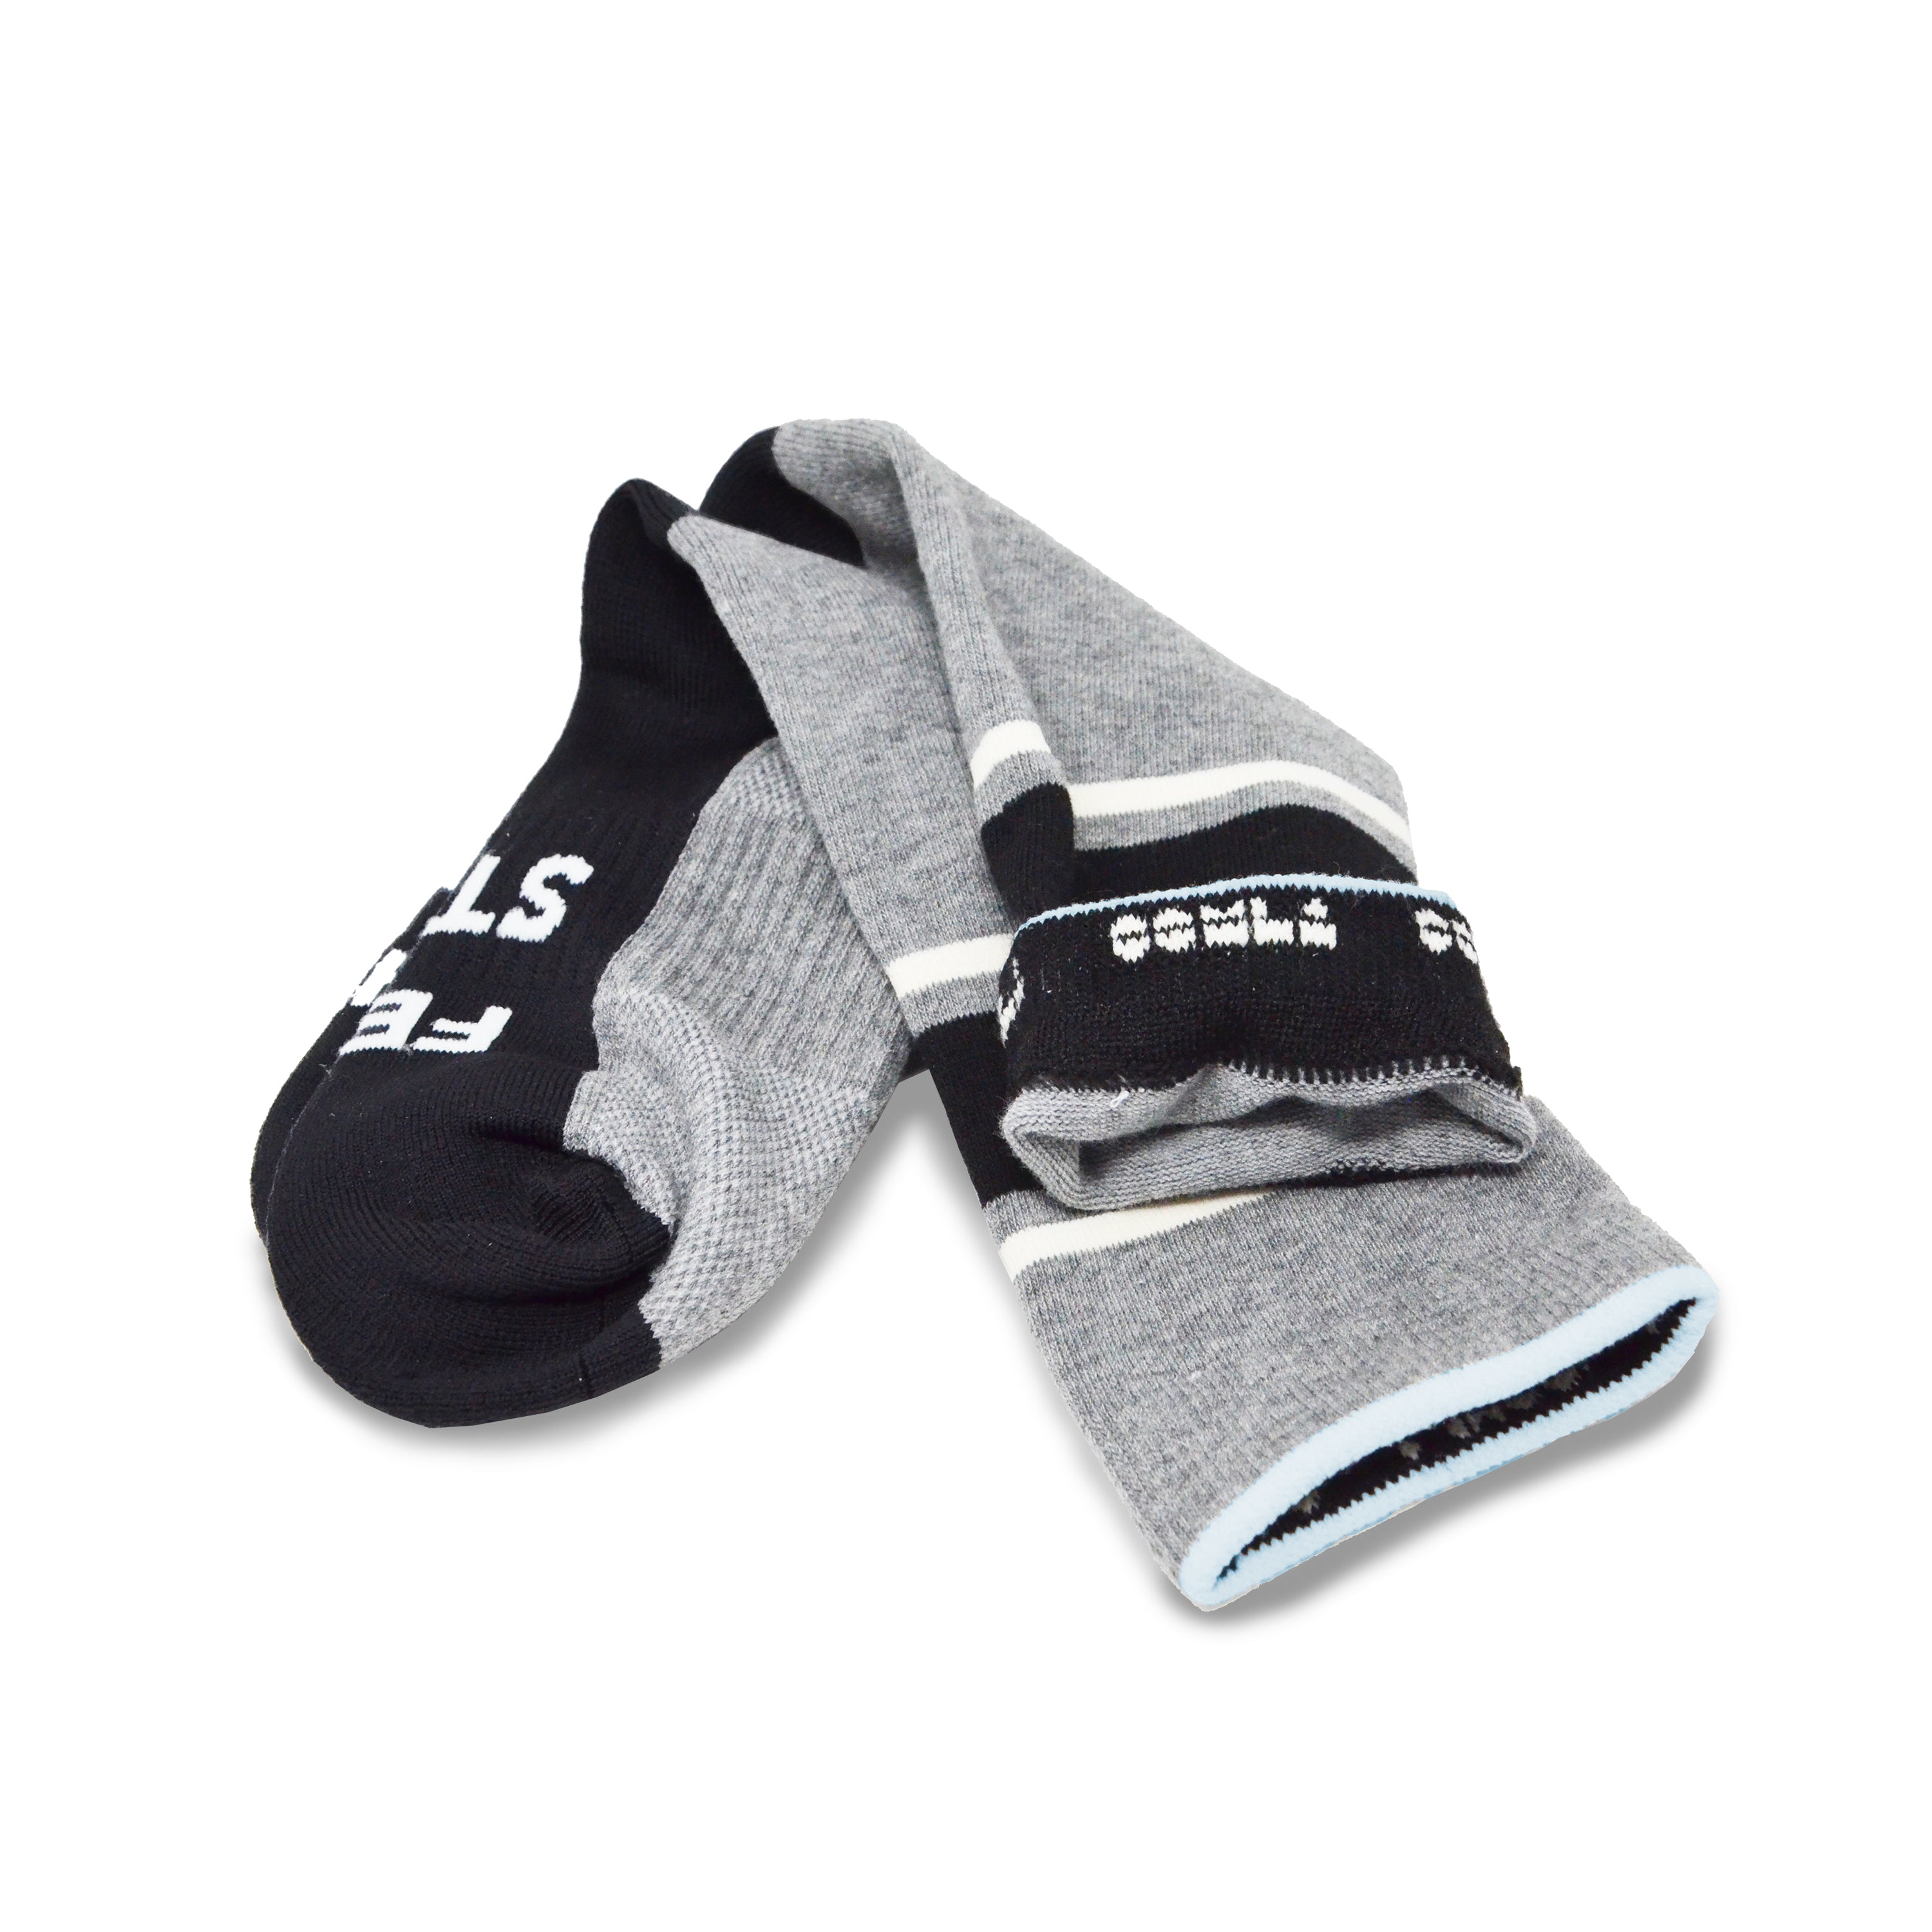 crossed triple threat bundle in grey / black (bra + shorts + socks bundle)